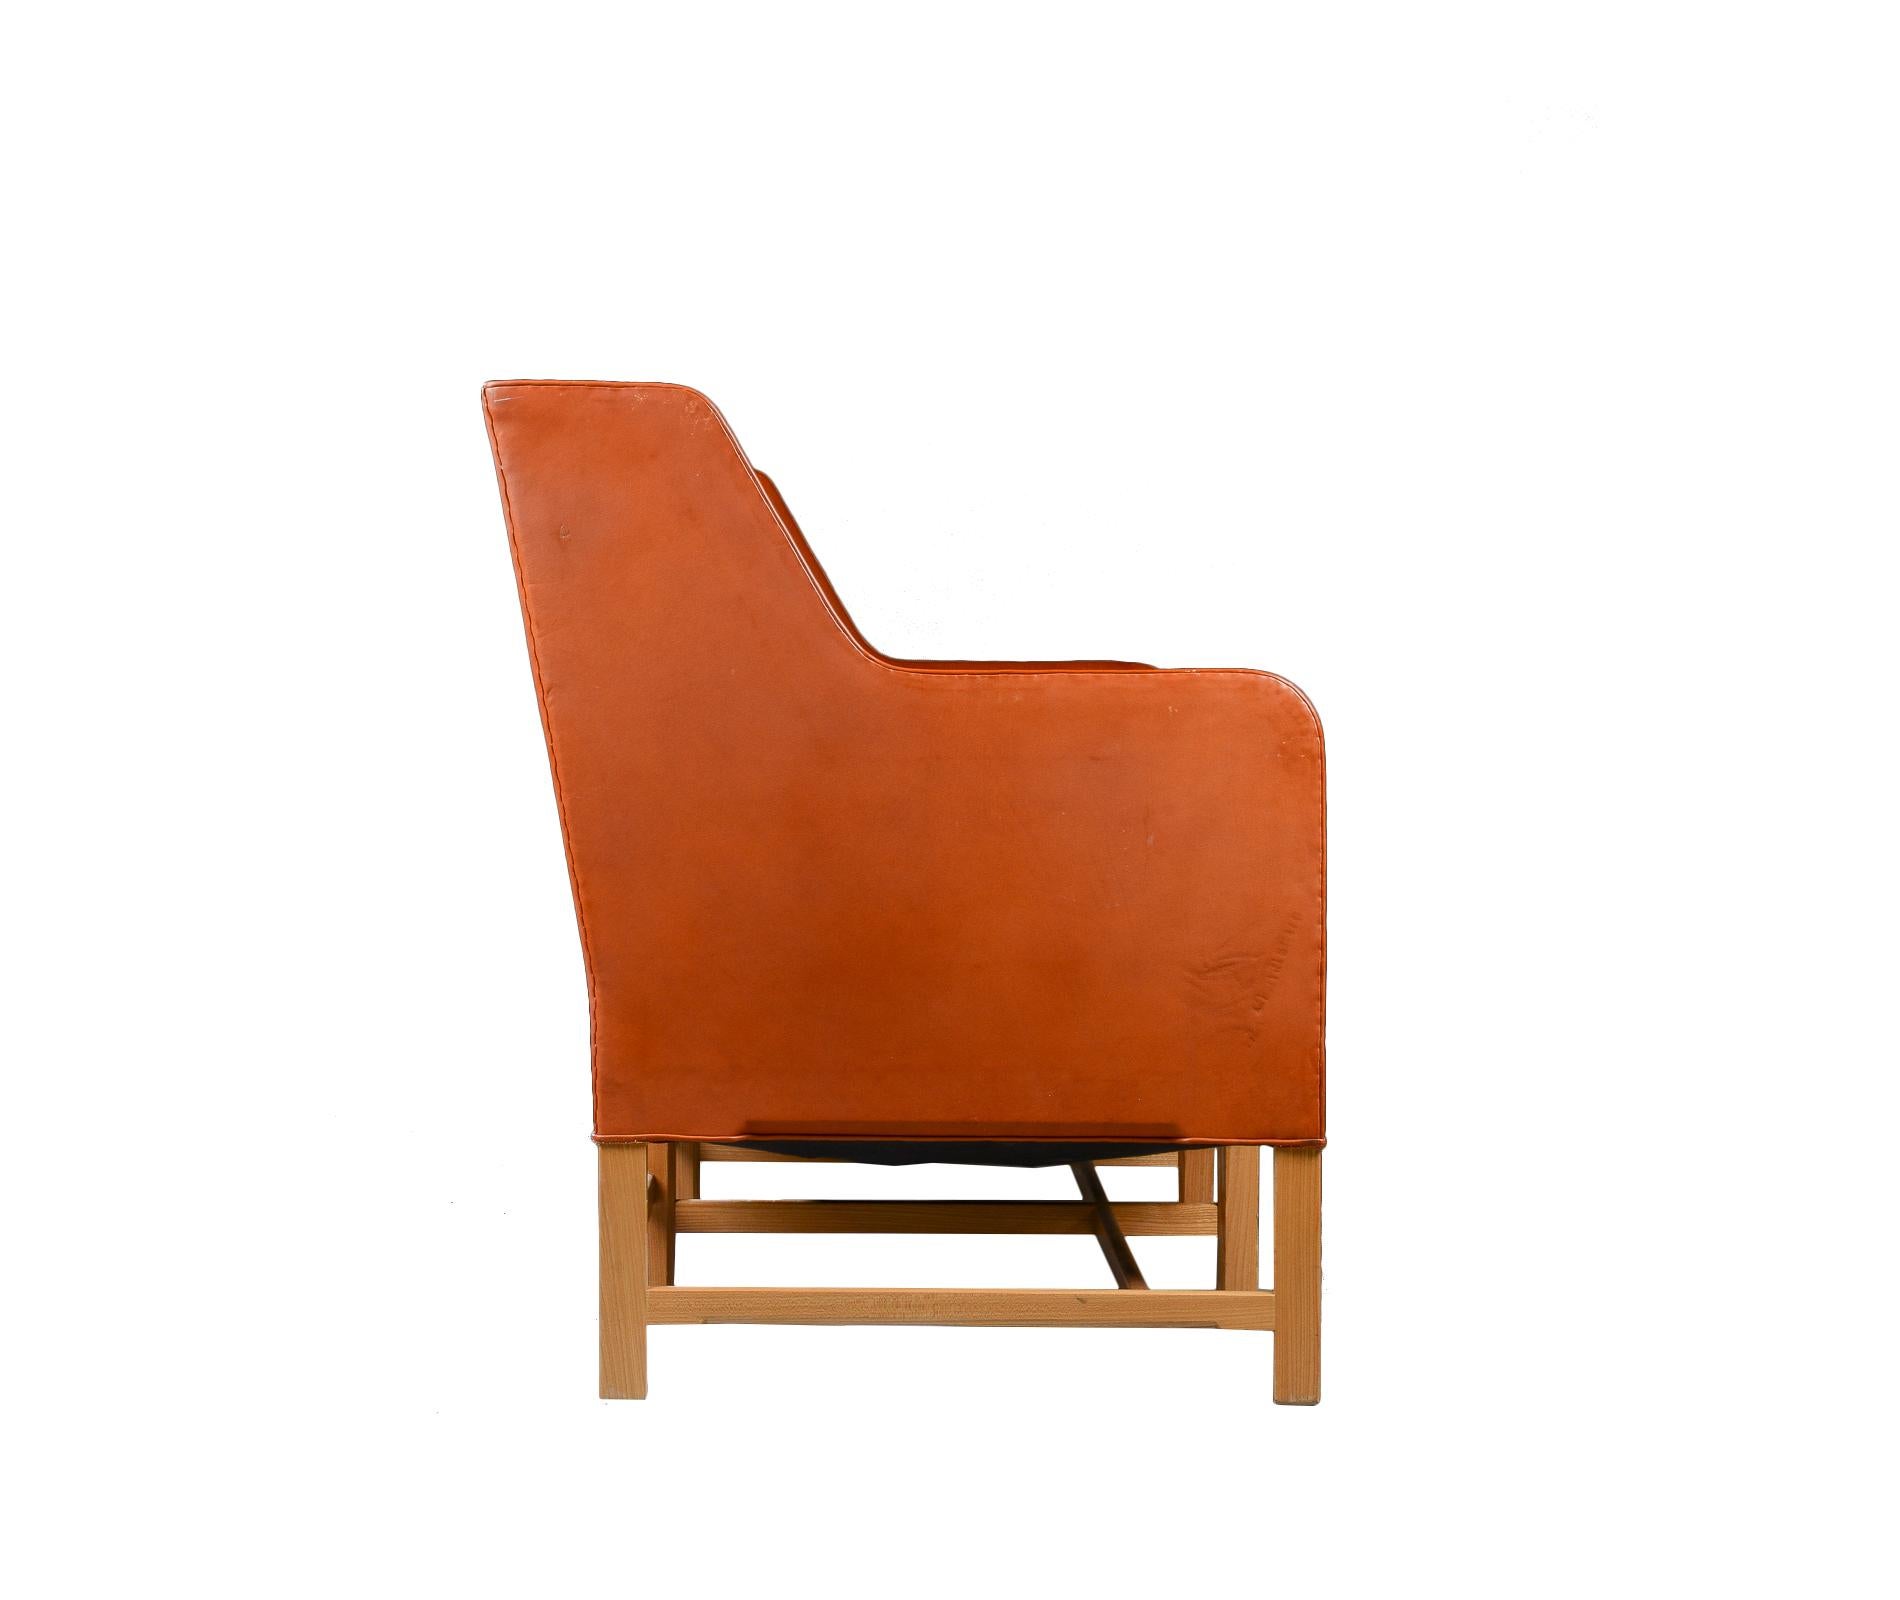 Scandinavian Modern Kaare Klint Three-Seat Sofa in Original Cognac Leather Rud, Rasmussen Danish For Sale